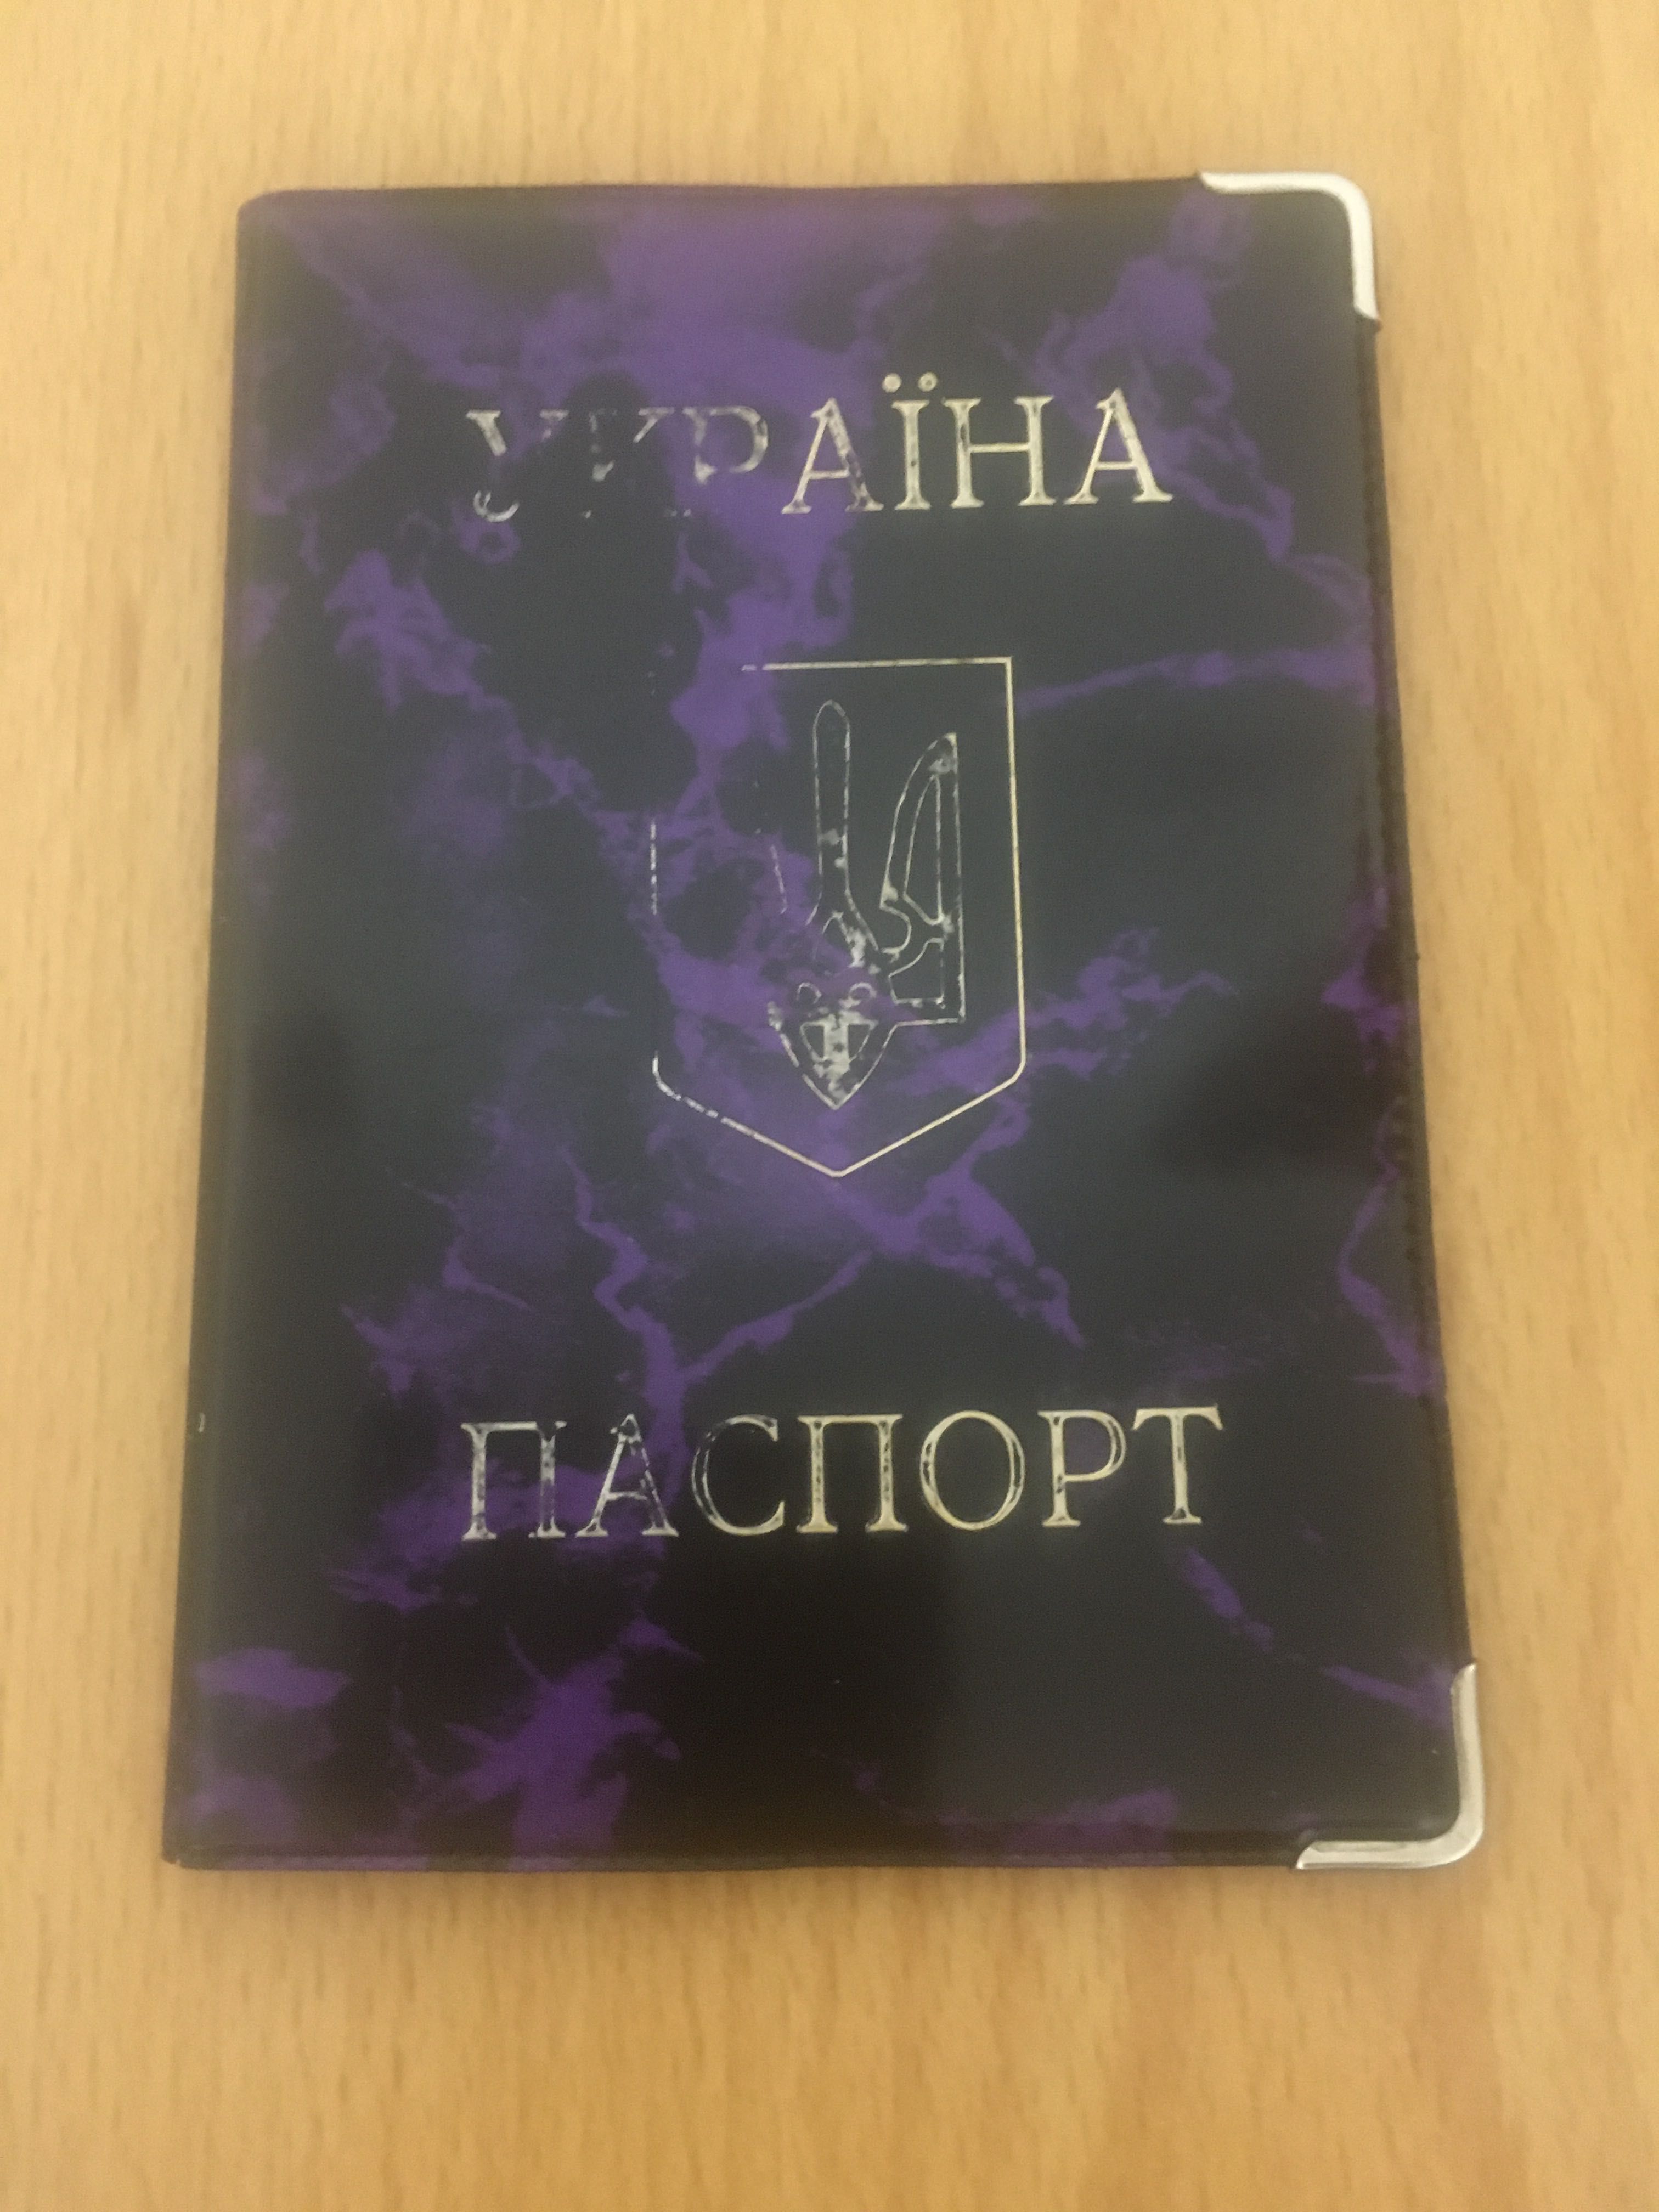 Обкладинка для паспорта чехол обложка